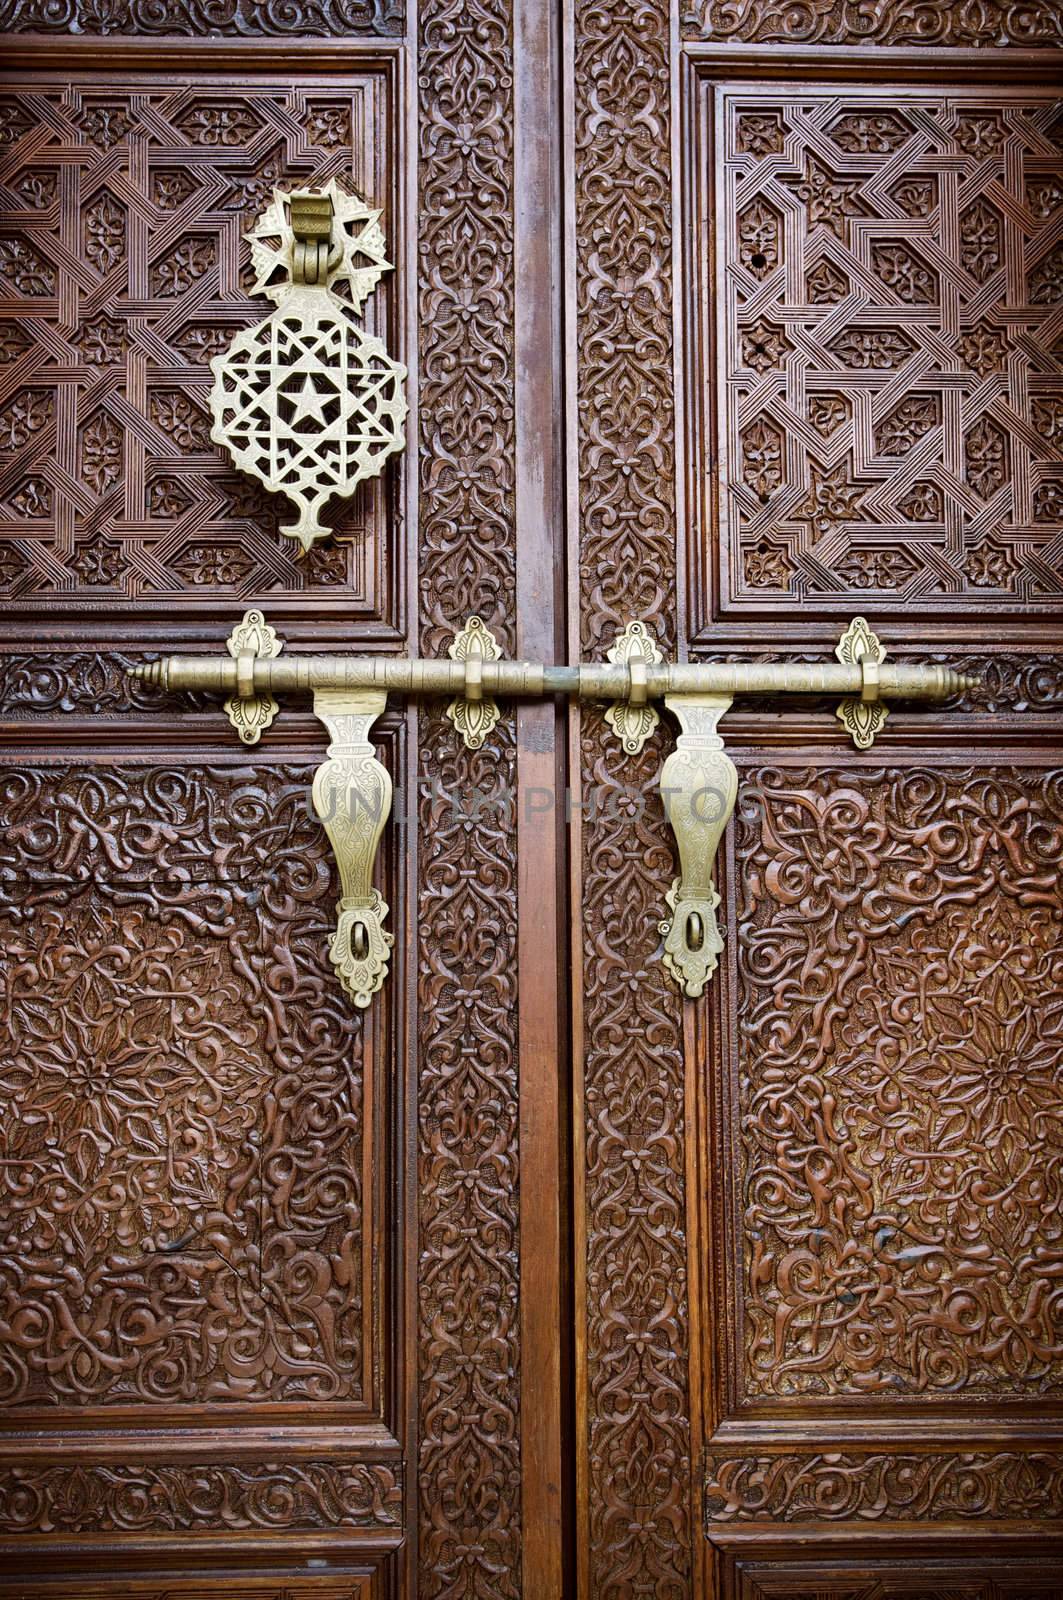 Islamic style door by szefei